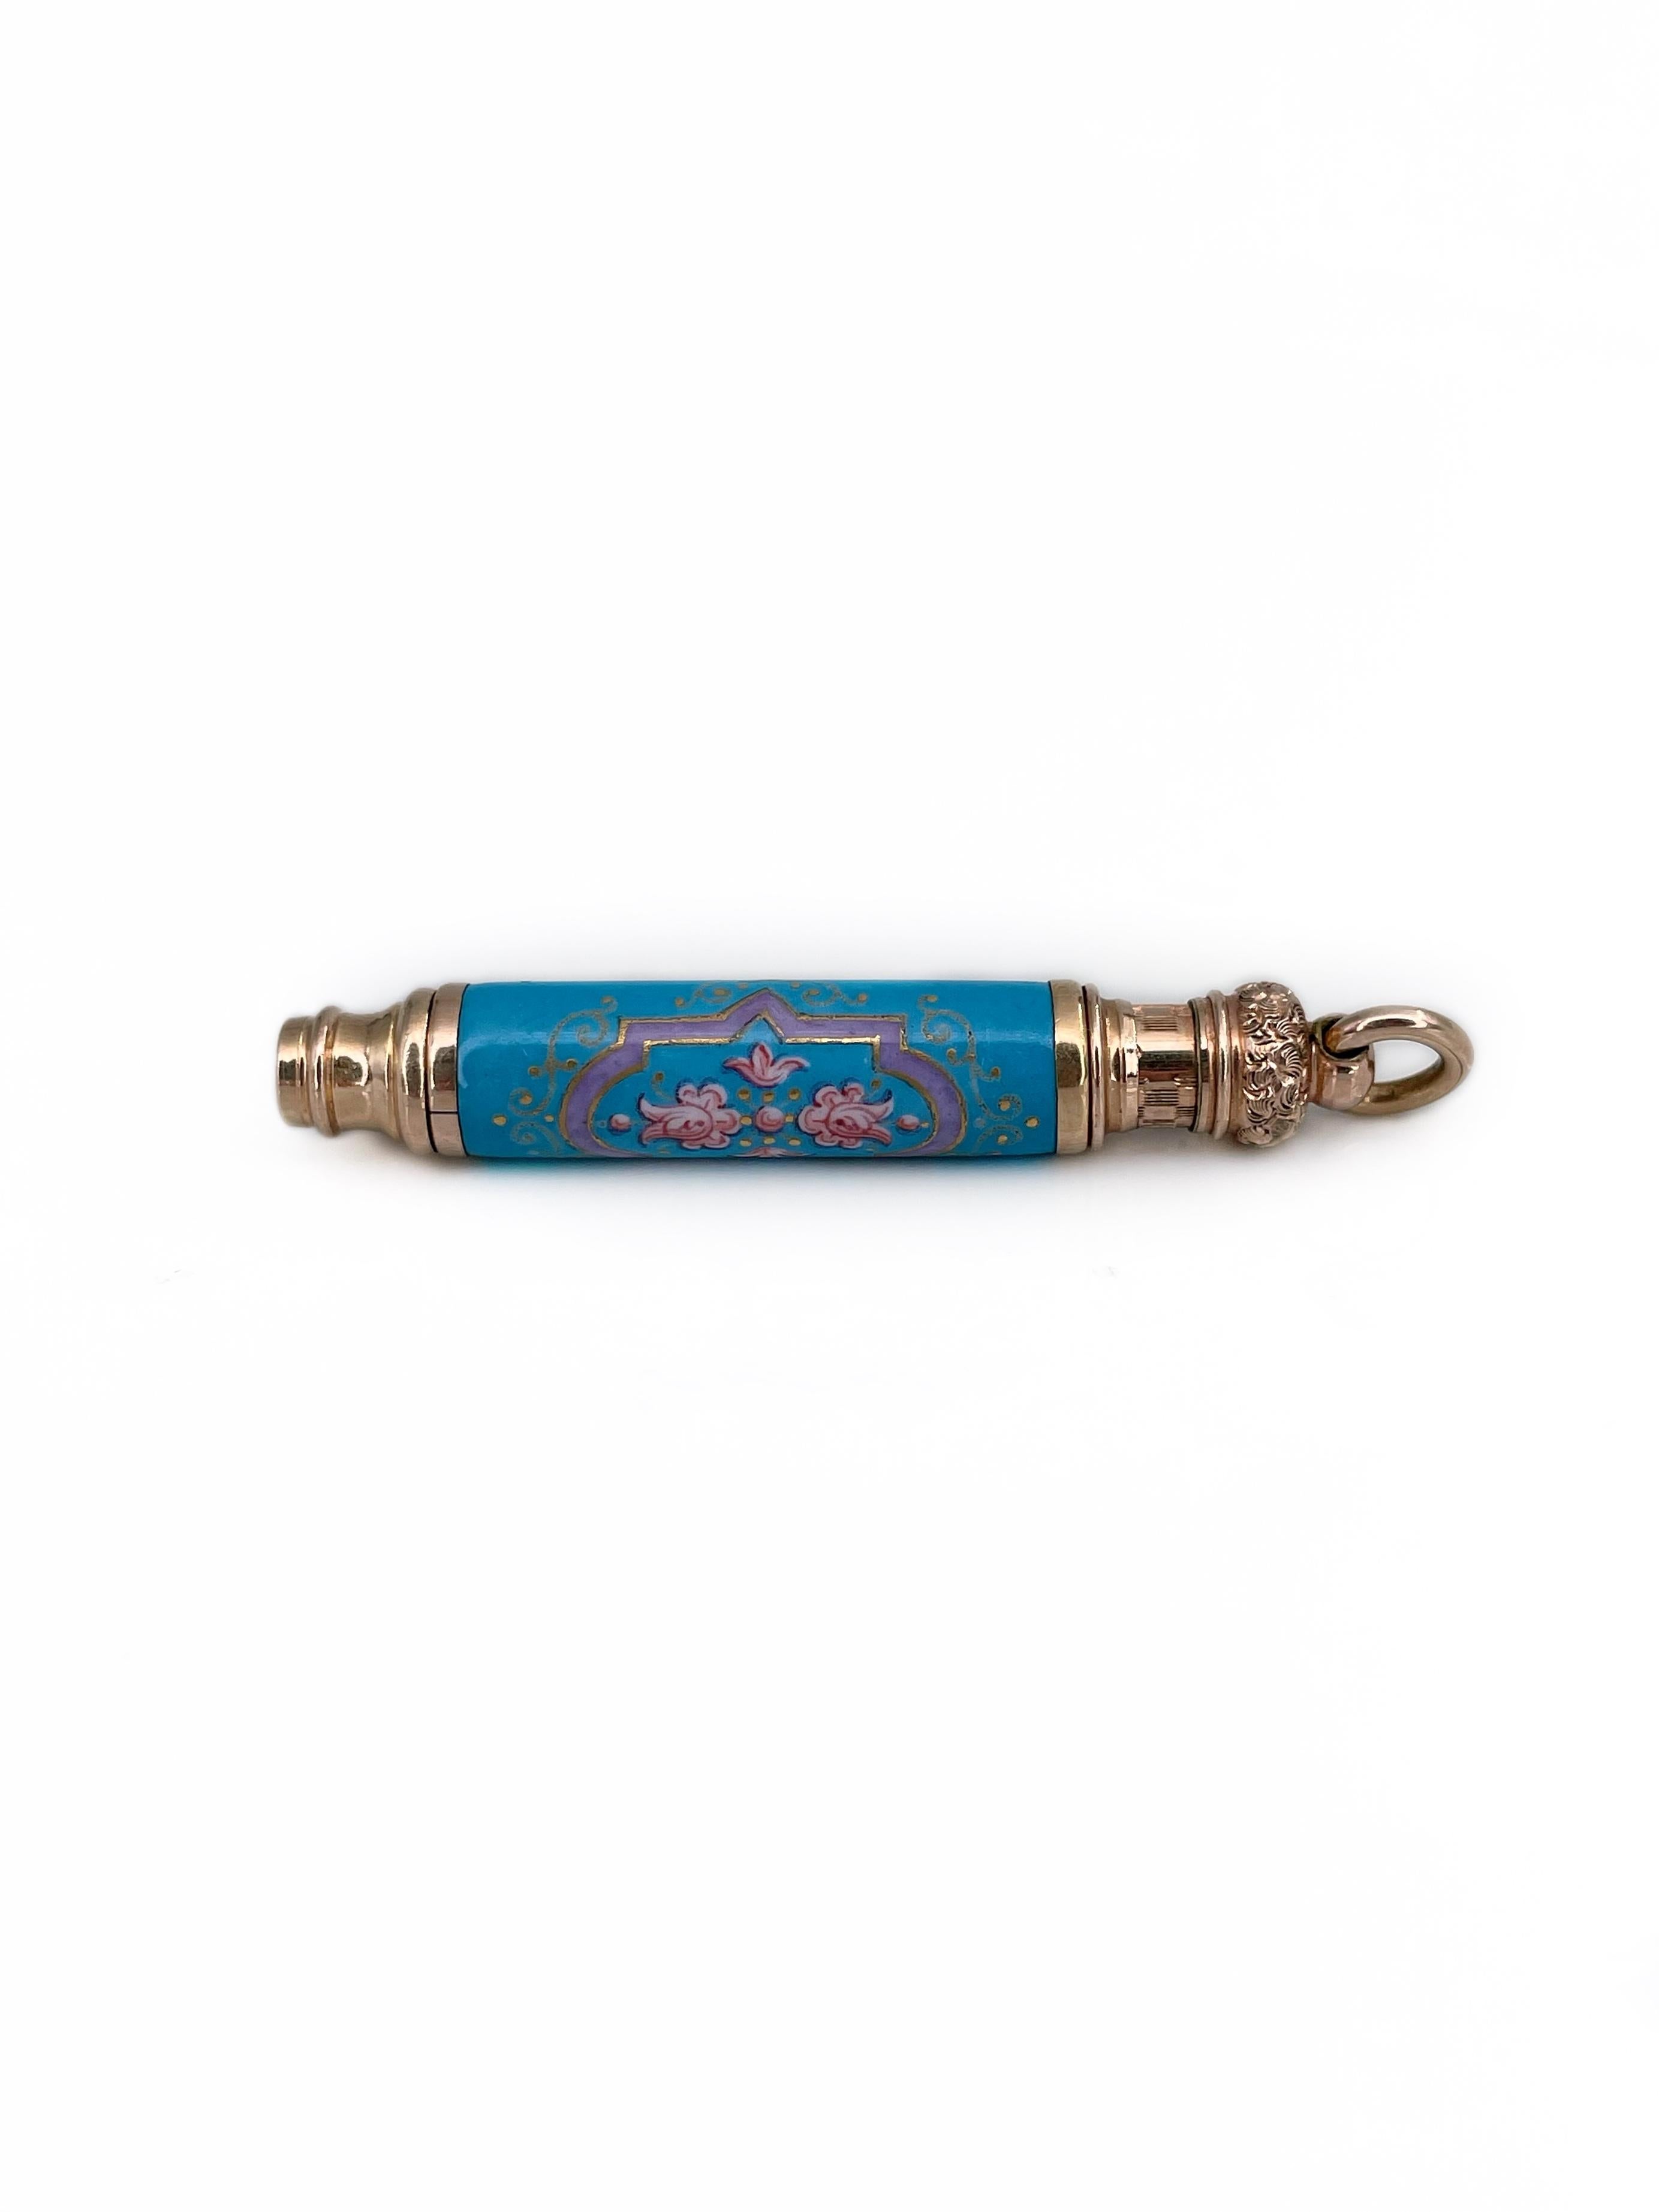 Voici un élégant pendentif ancien en forme de crayon à propulsion télescopique, conçu par LeRoy W. Fairchild. Circa 1870.

Le boîtier est en or et est orné d'émaux colorés bleu ciel et rose avec des motifs floraux.

Signé : L. W. Fairchild 21 mars